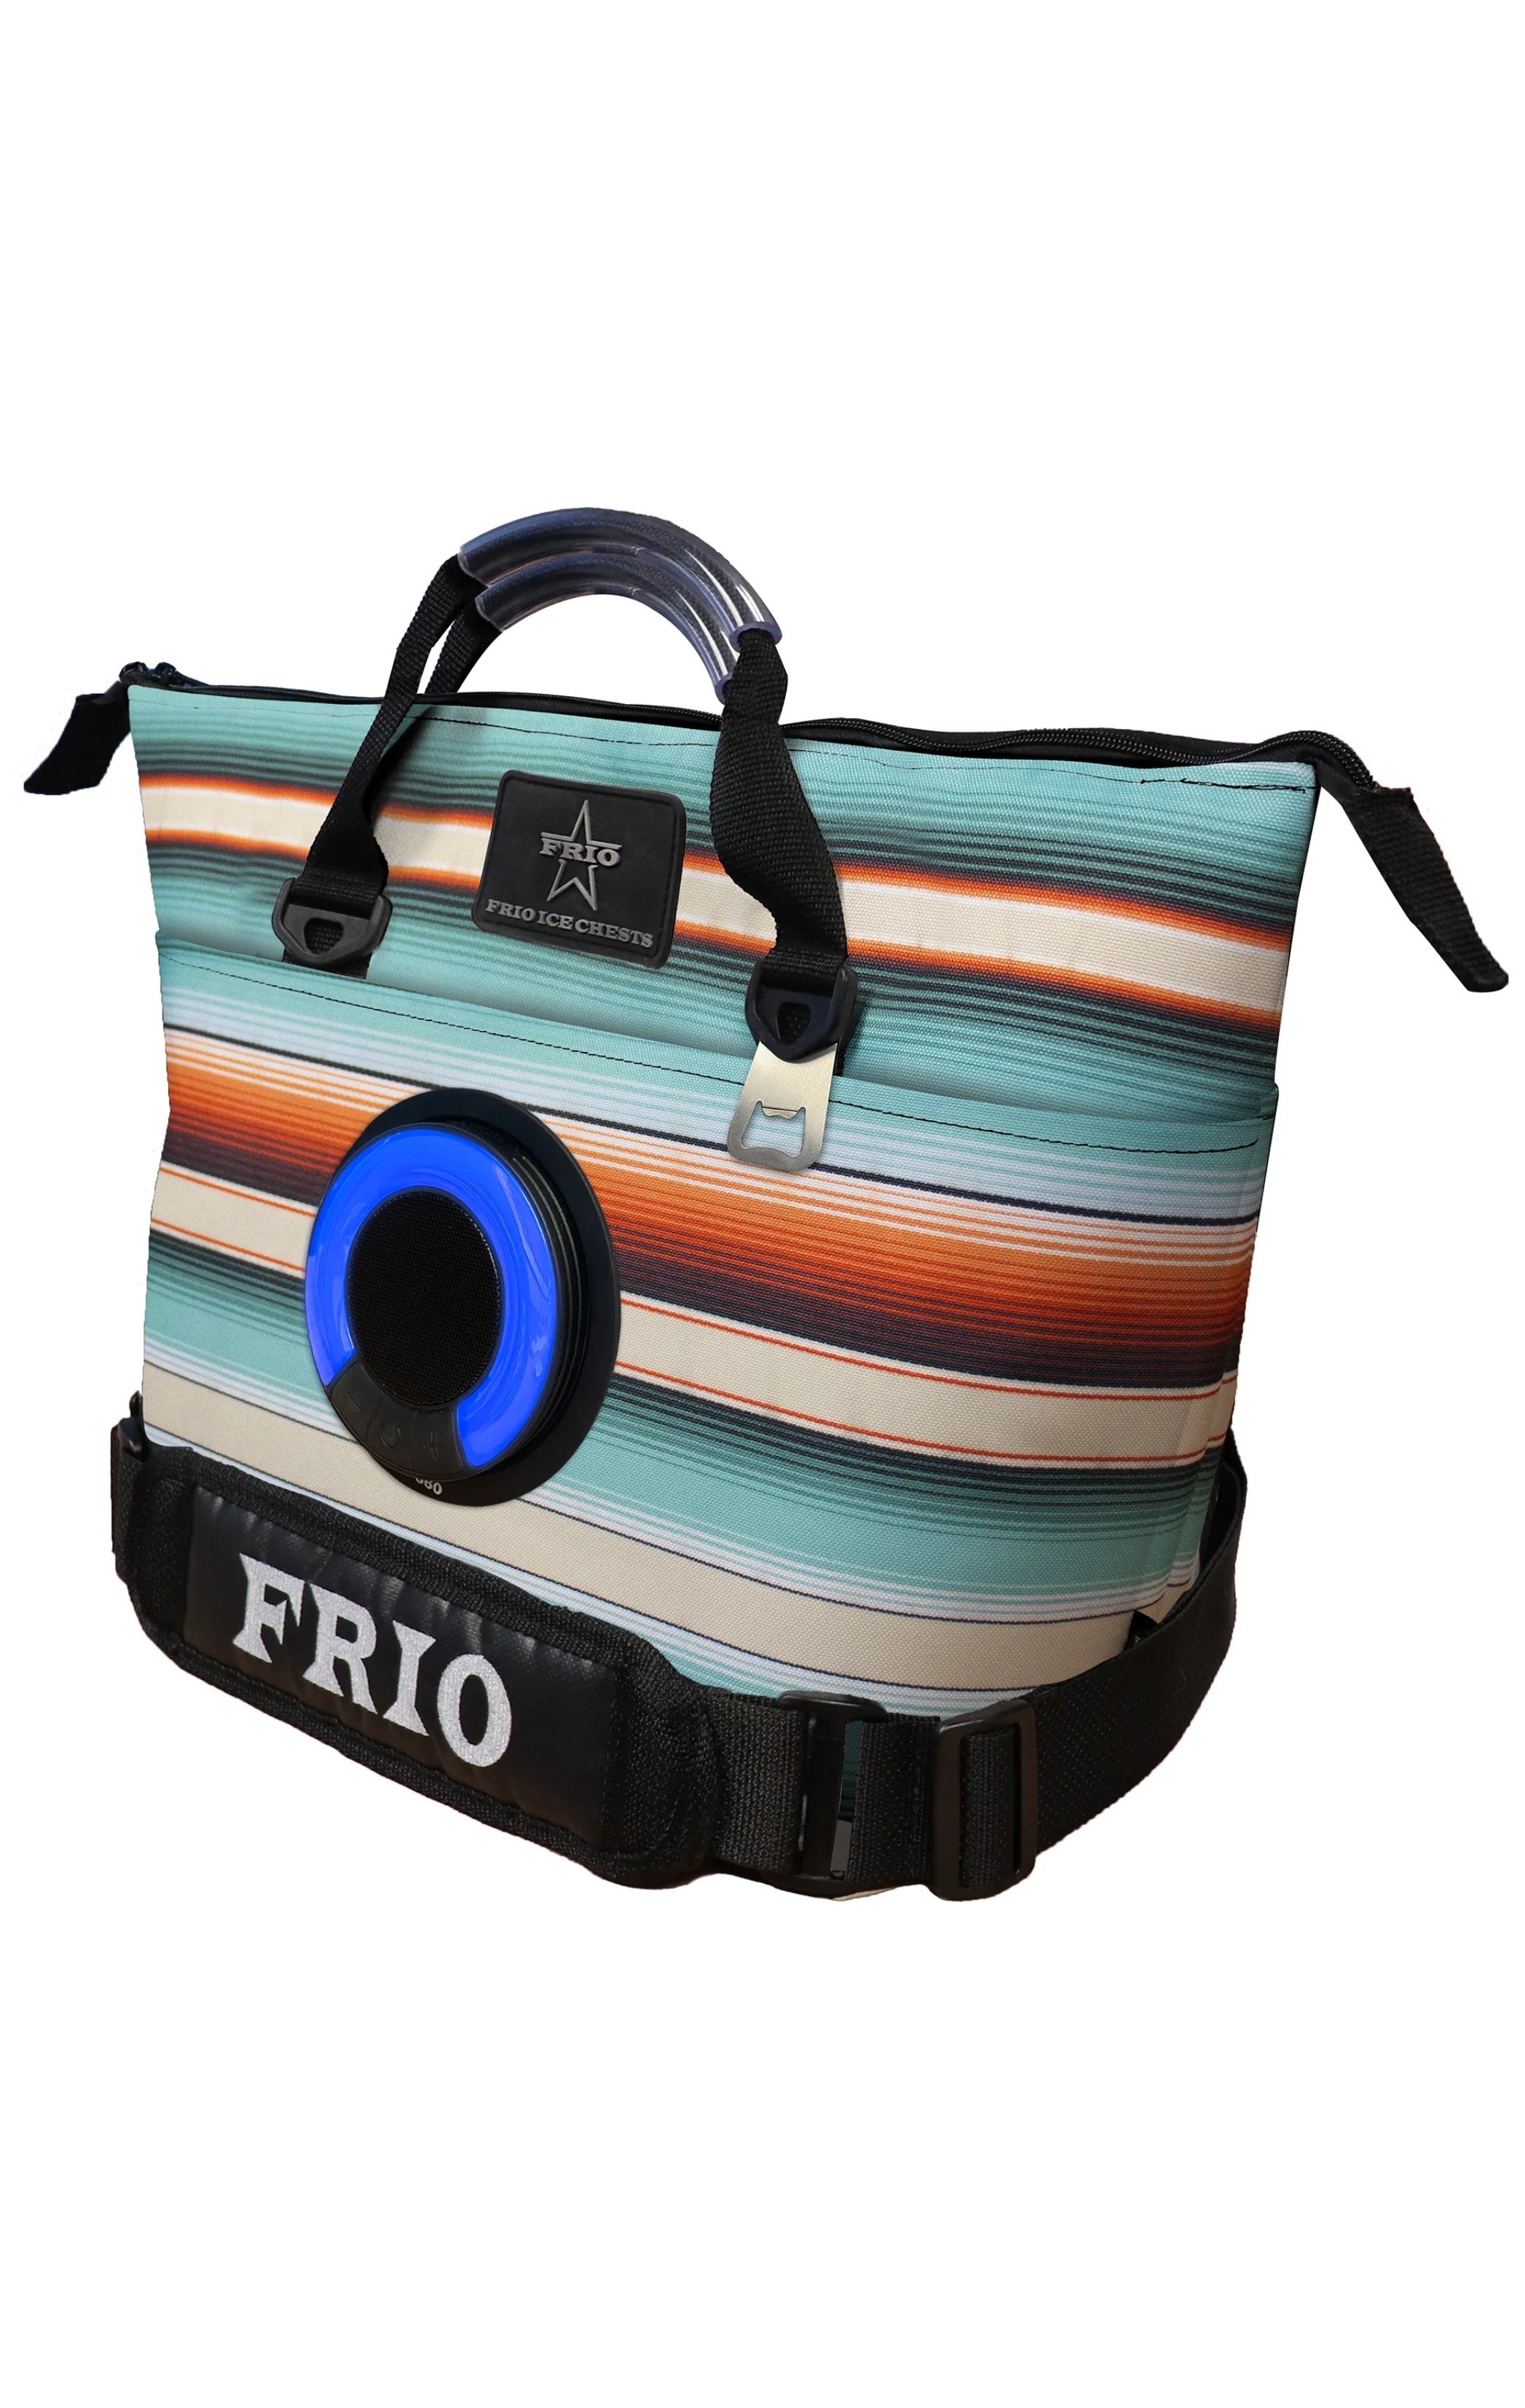 Frio Original Softside Cooler